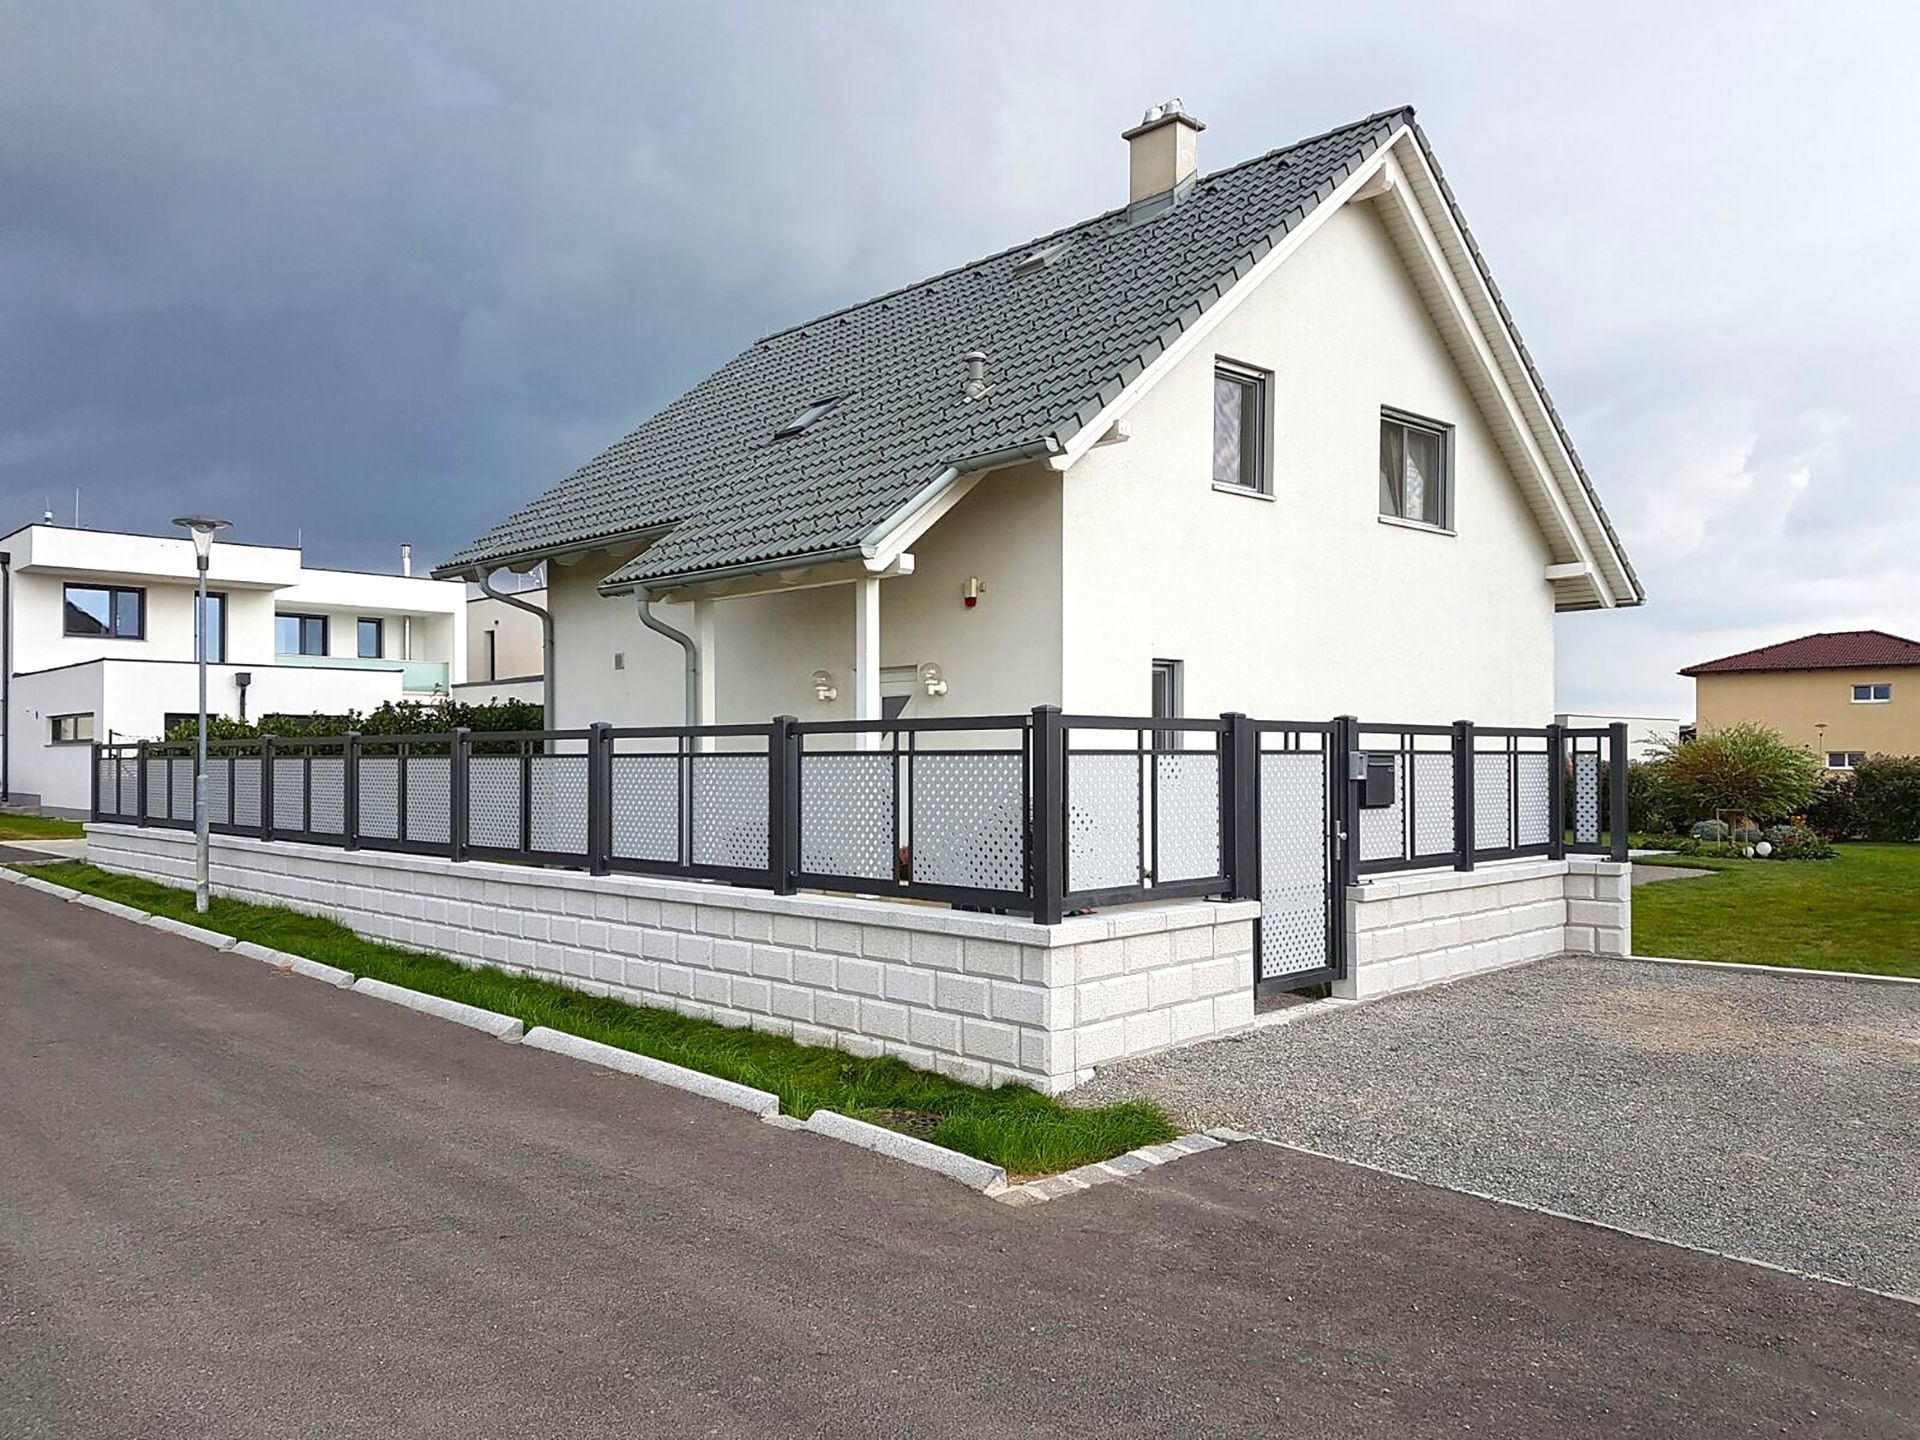 Dekorzaun in anthrazit mit grauer Lochblechfüllung, mit passender Gartentüre, Modell Loskana von GUARDI, vor weißem Einfamilienhaus